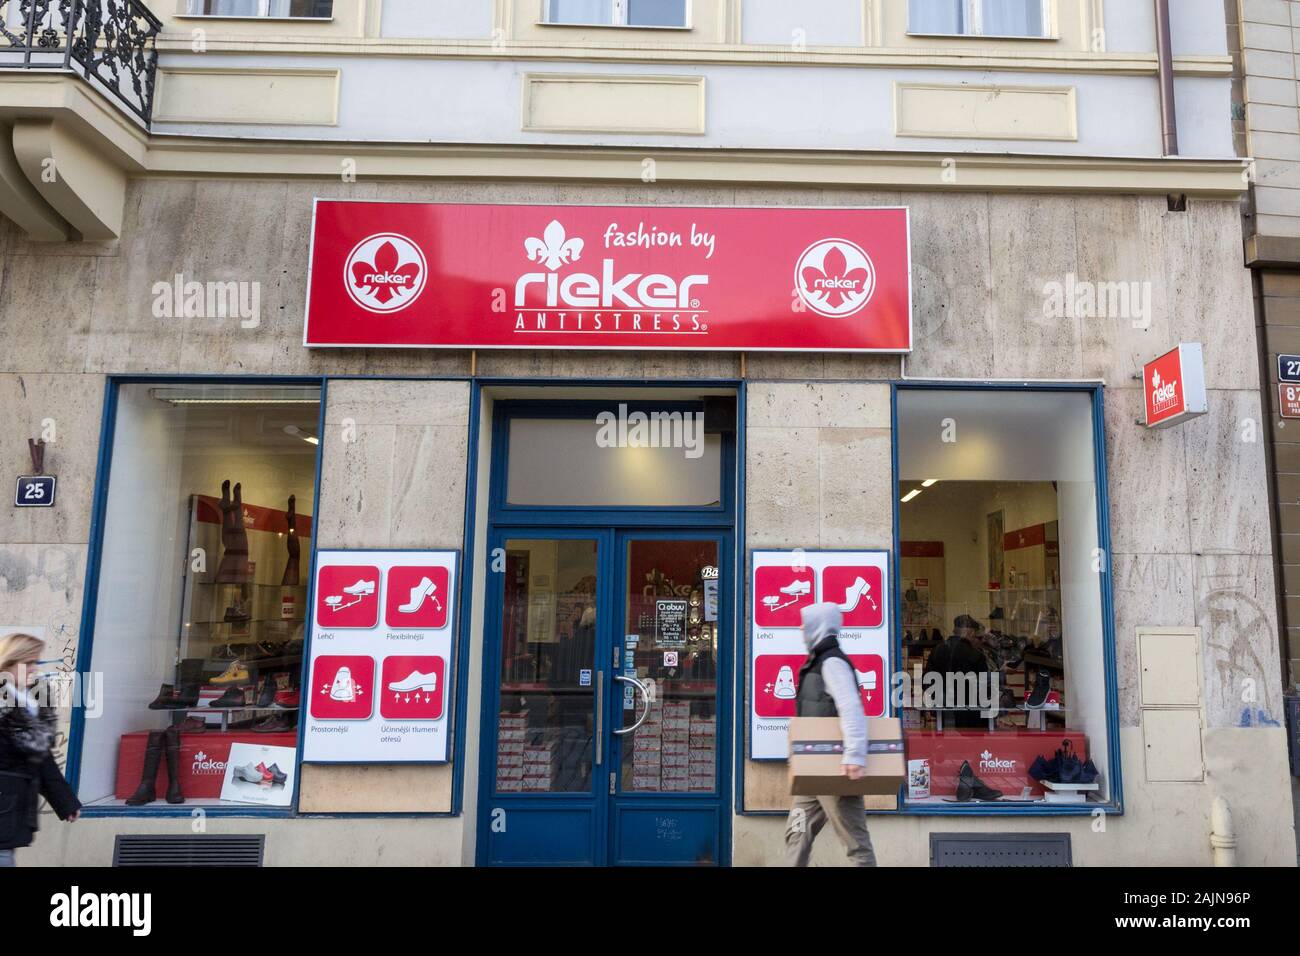 PRAGUE, RÉPUBLIQUE TCHÈQUE - le 31 octobre 2019 : Logo de Rieker Chaussures  en face de leur magasin pour Prague. Rieker antistress est une marque  allemande de chaussures fabricant Photo Stock - Alamy